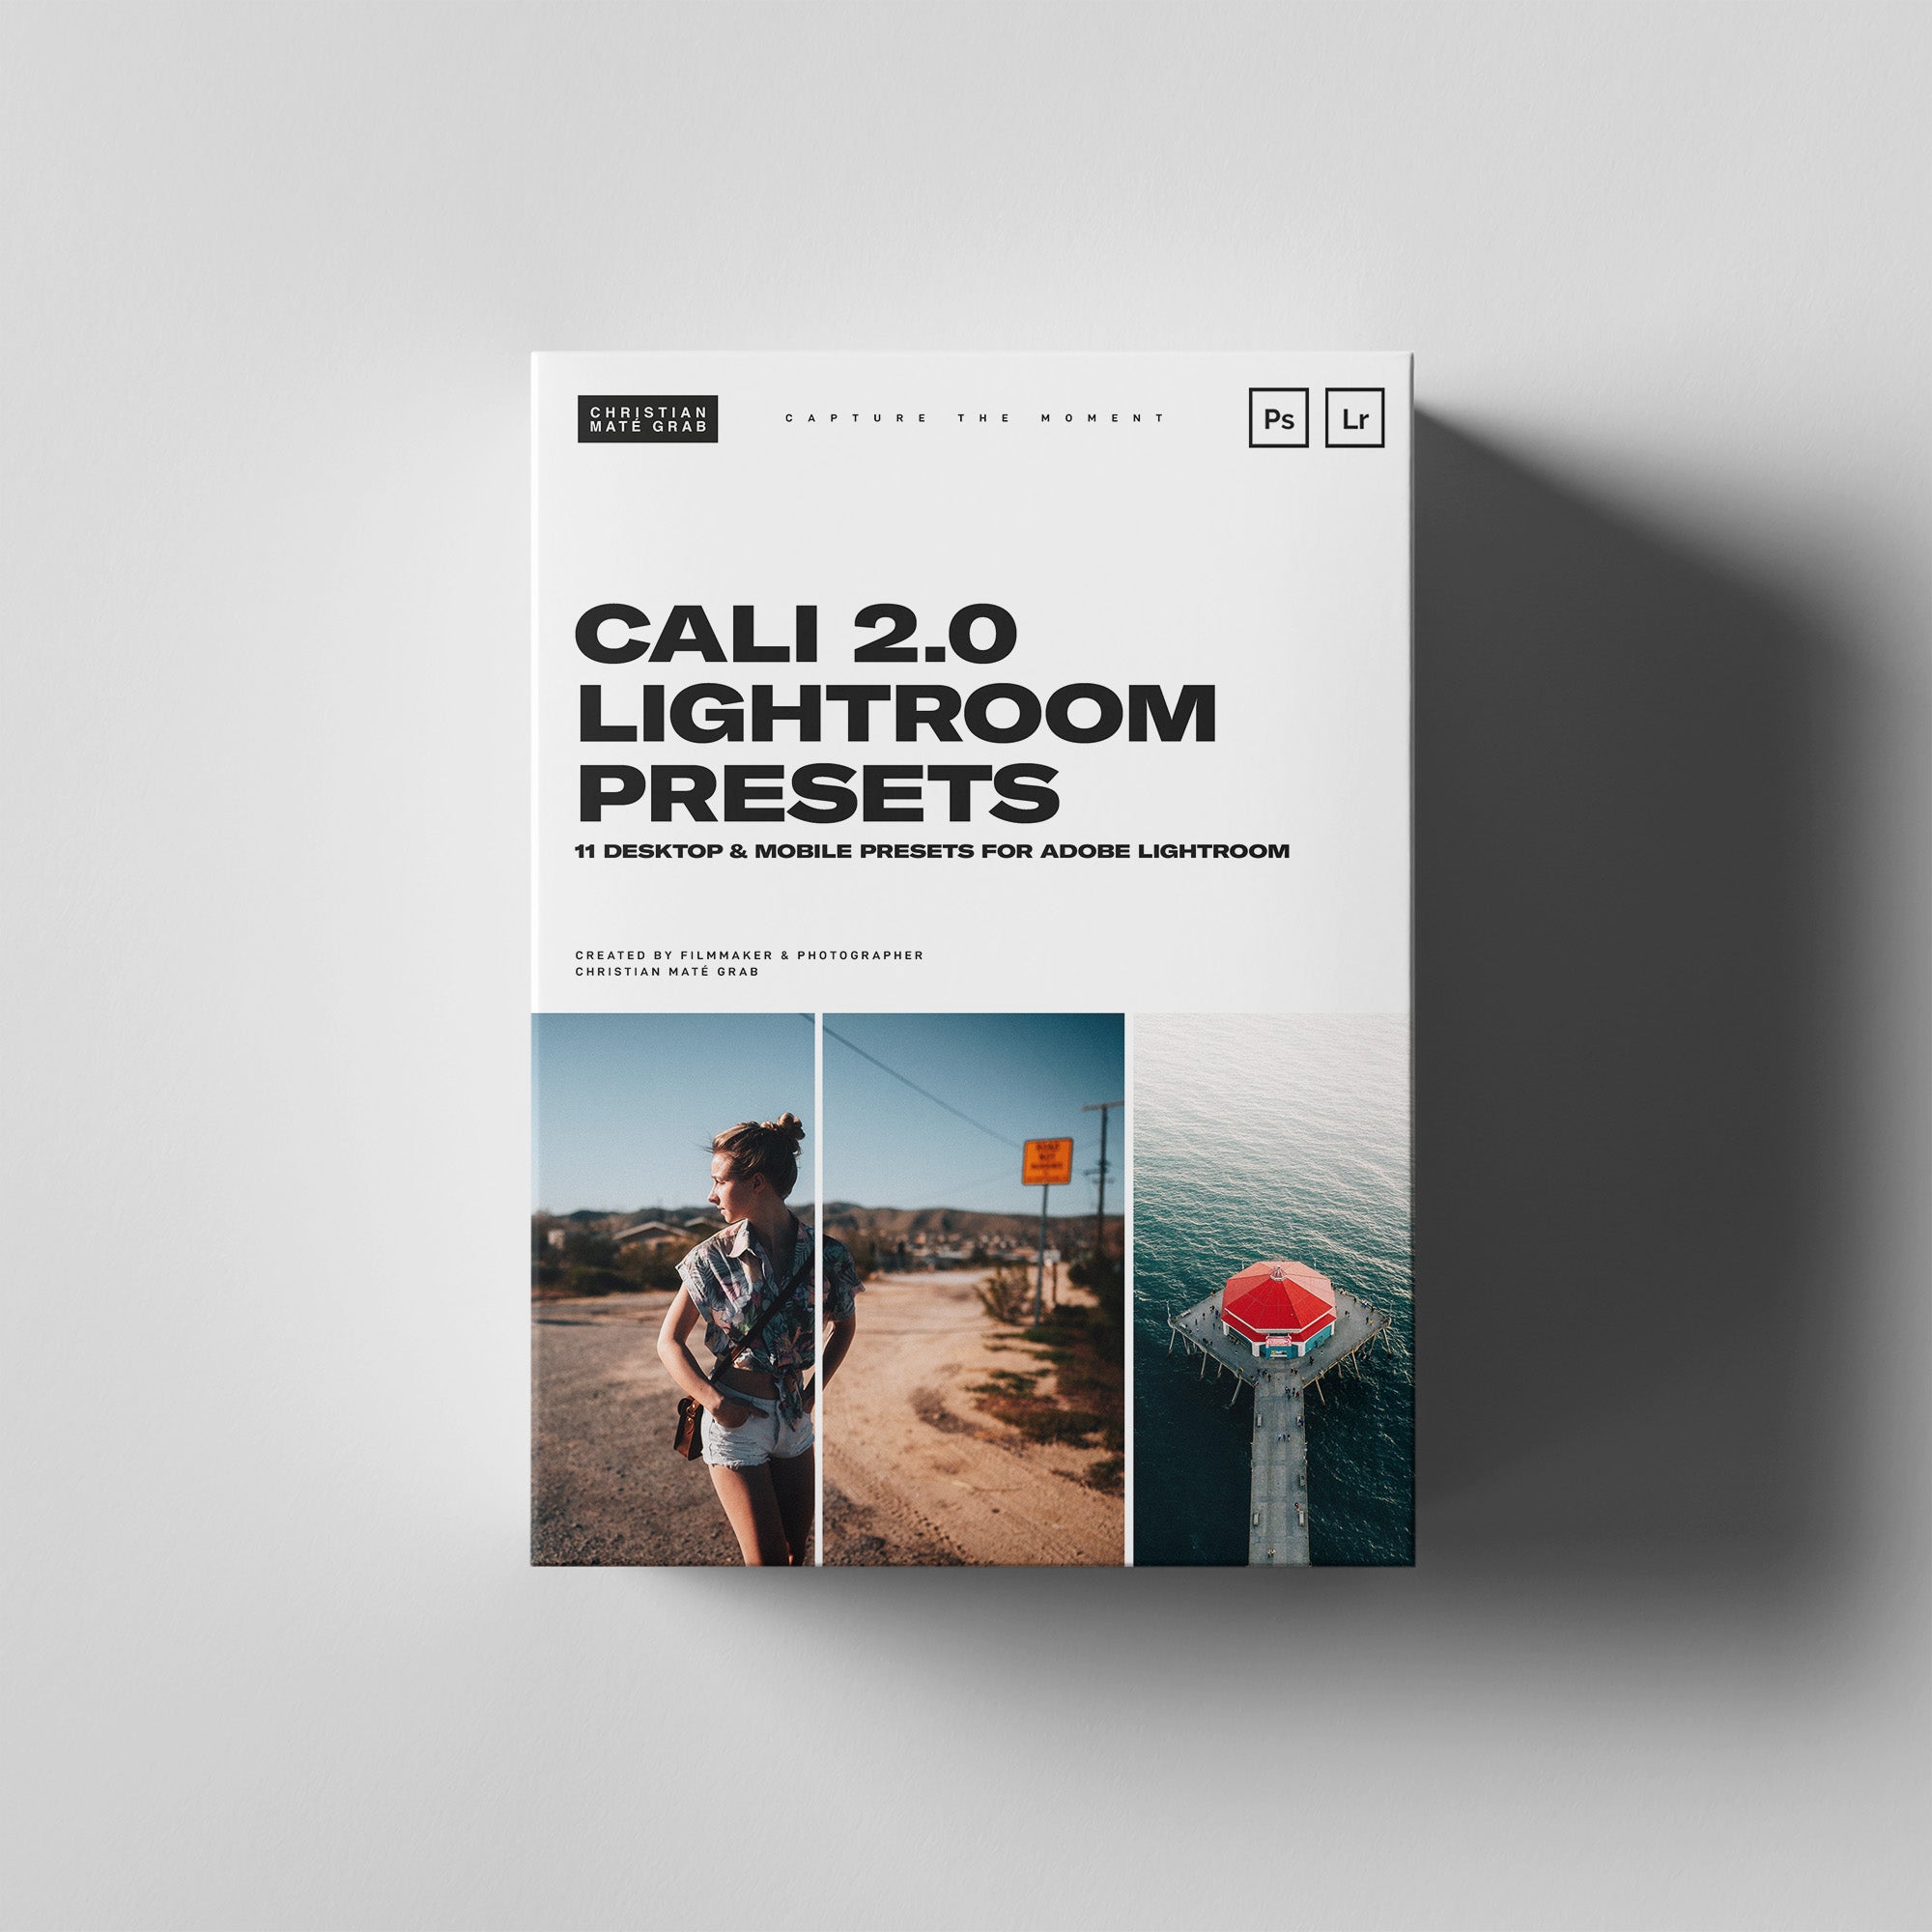 Cali 2.0 Lightroom Presets (Mobile+Desktop)